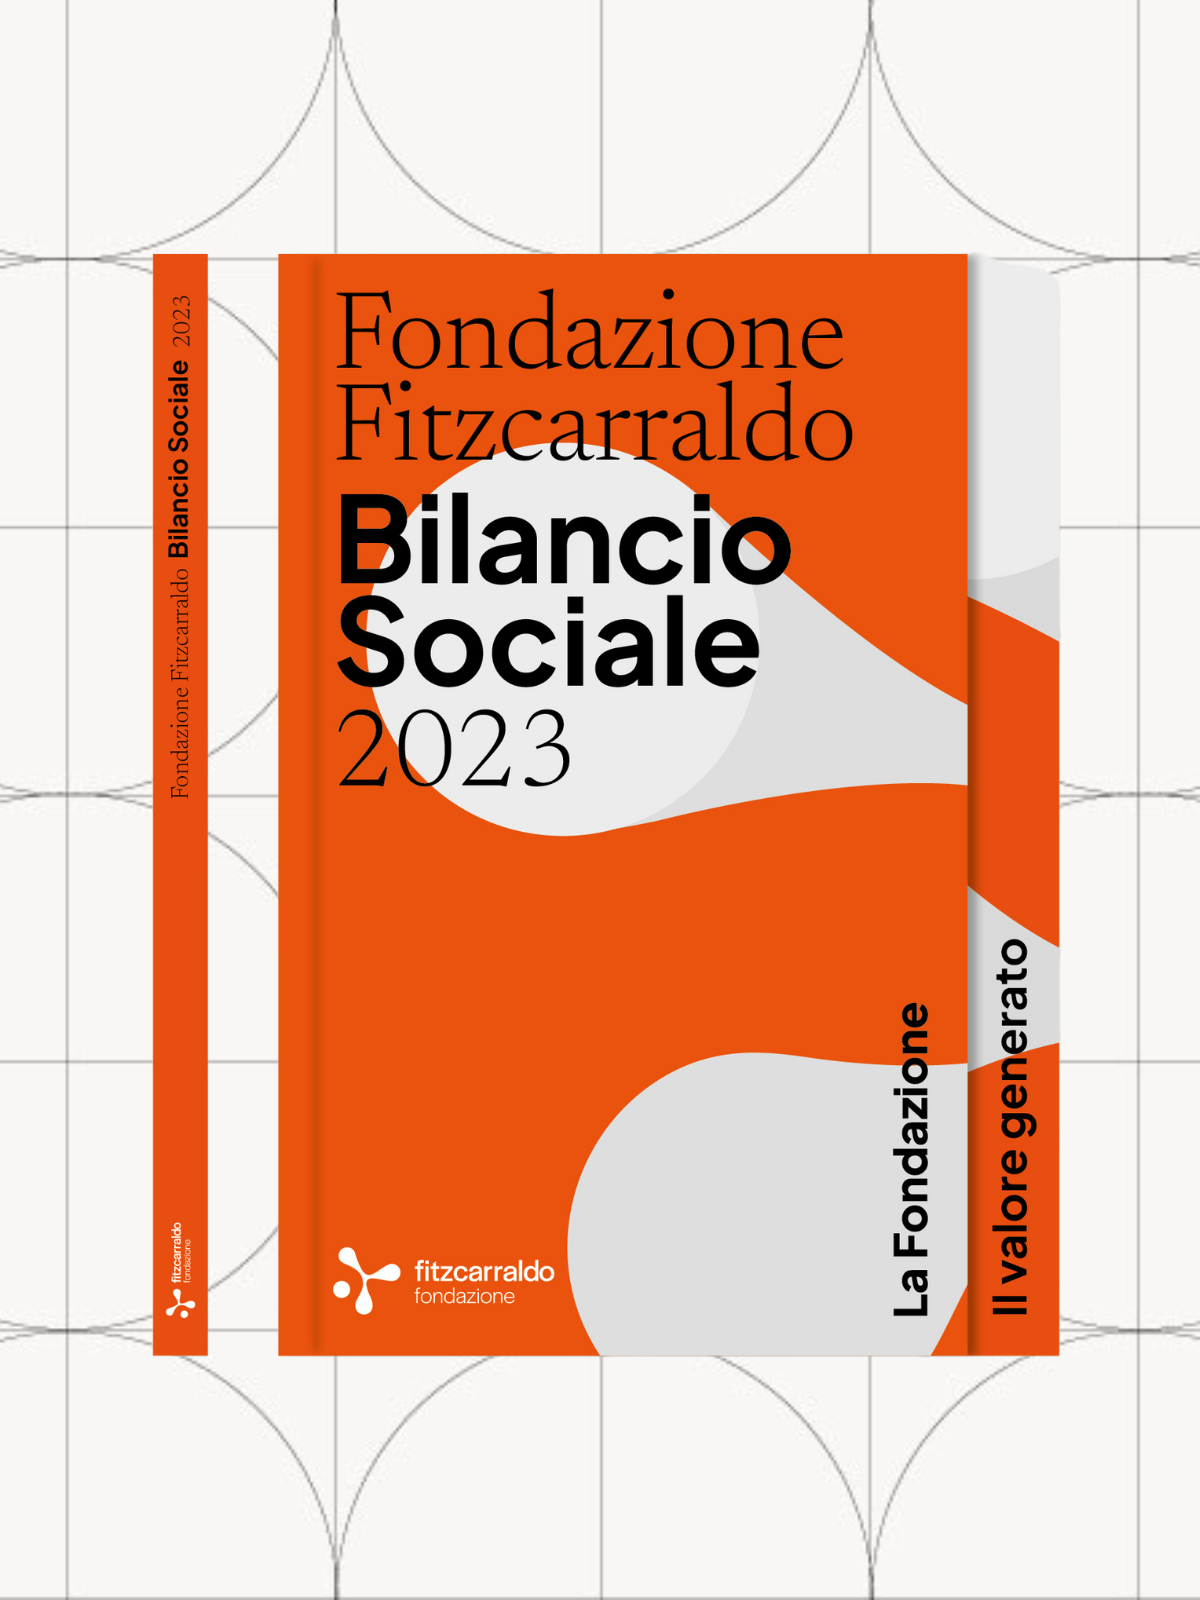 bilancio sociale 2023 fondazione fitzcarraldo